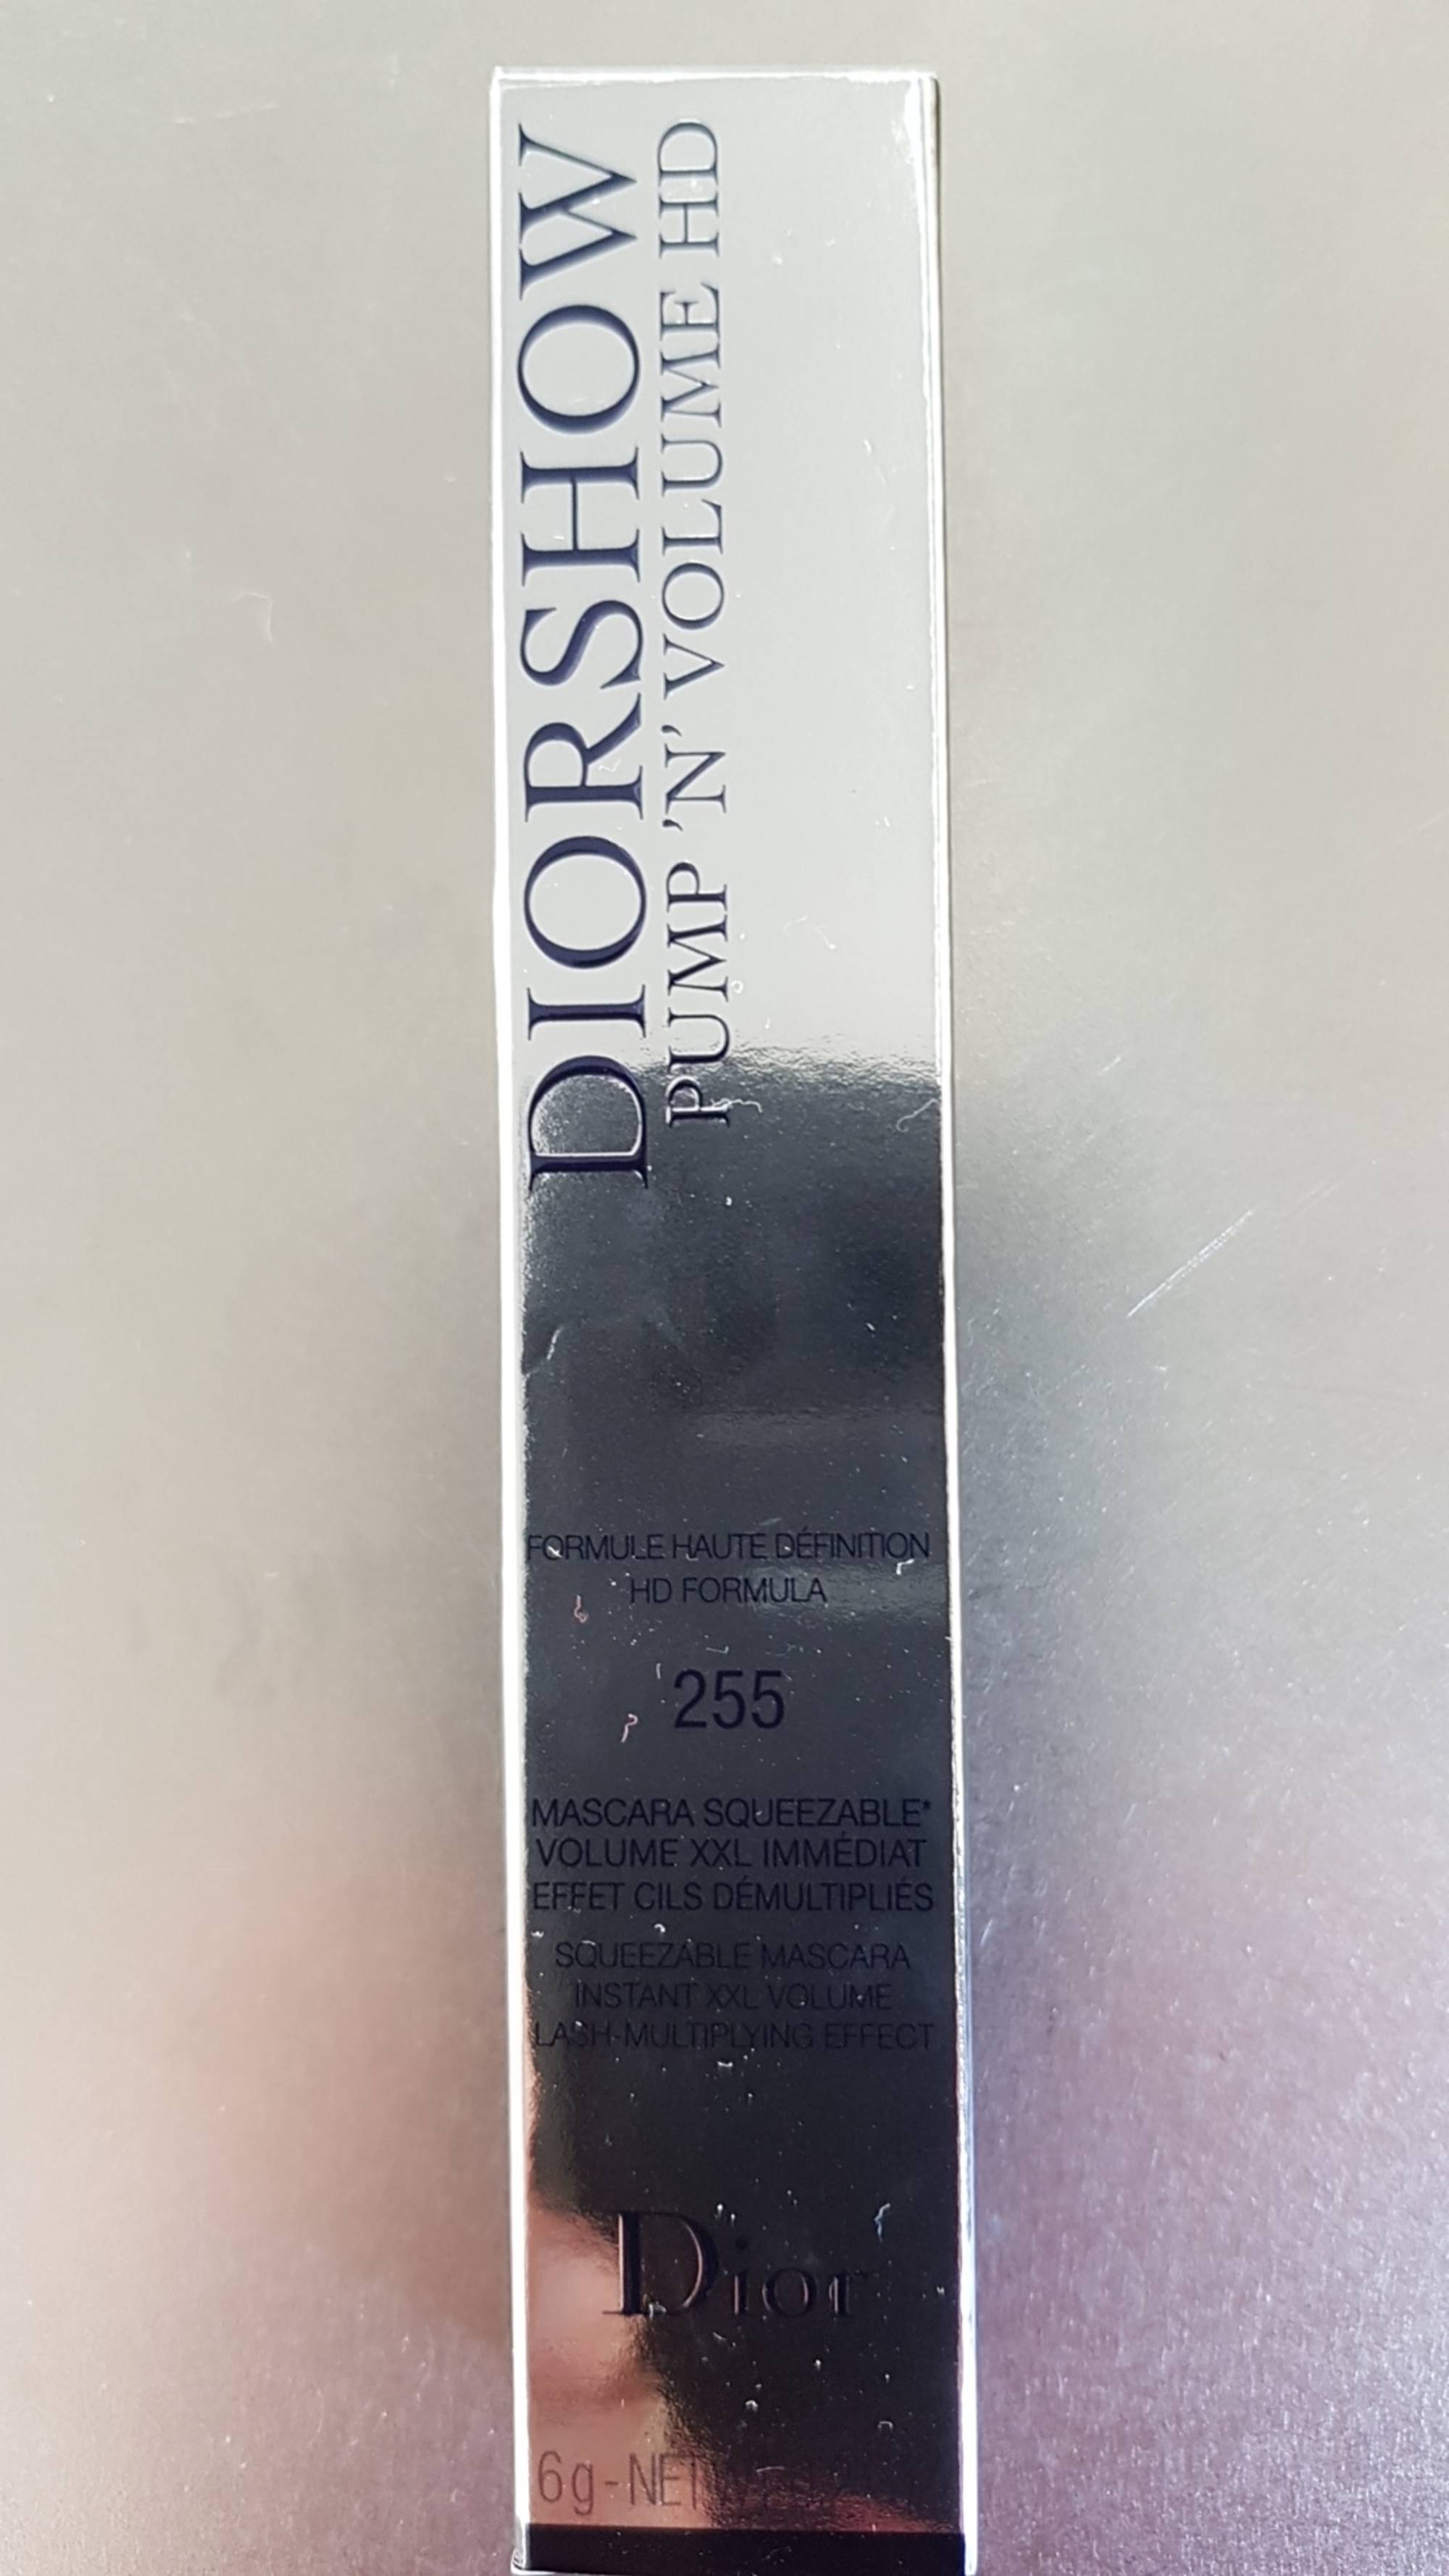 DIOR - Diorshow pump'n'volume HD - Mascara squeezable